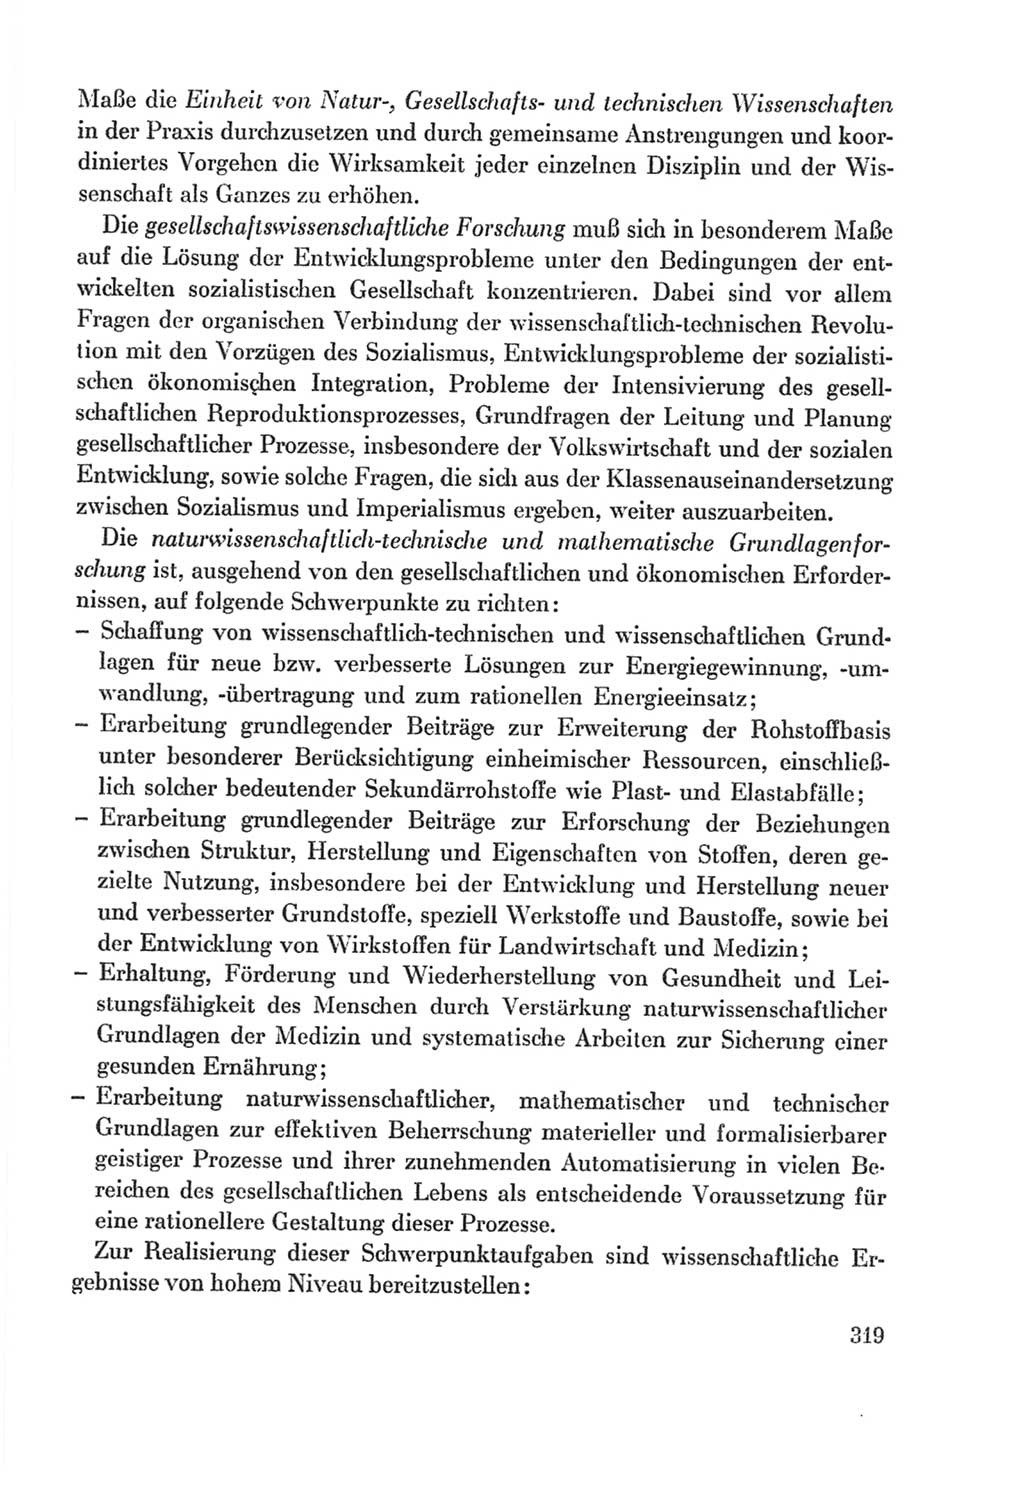 Protokoll der Verhandlungen des Ⅸ. Parteitages der Sozialistischen Einheitspartei Deutschlands (SED) [Deutsche Demokratische Republik (DDR)] 1976, Band 2, Seite 319 (Prot. Verh. Ⅸ. PT SED DDR 1976, Bd. 2, S. 319)